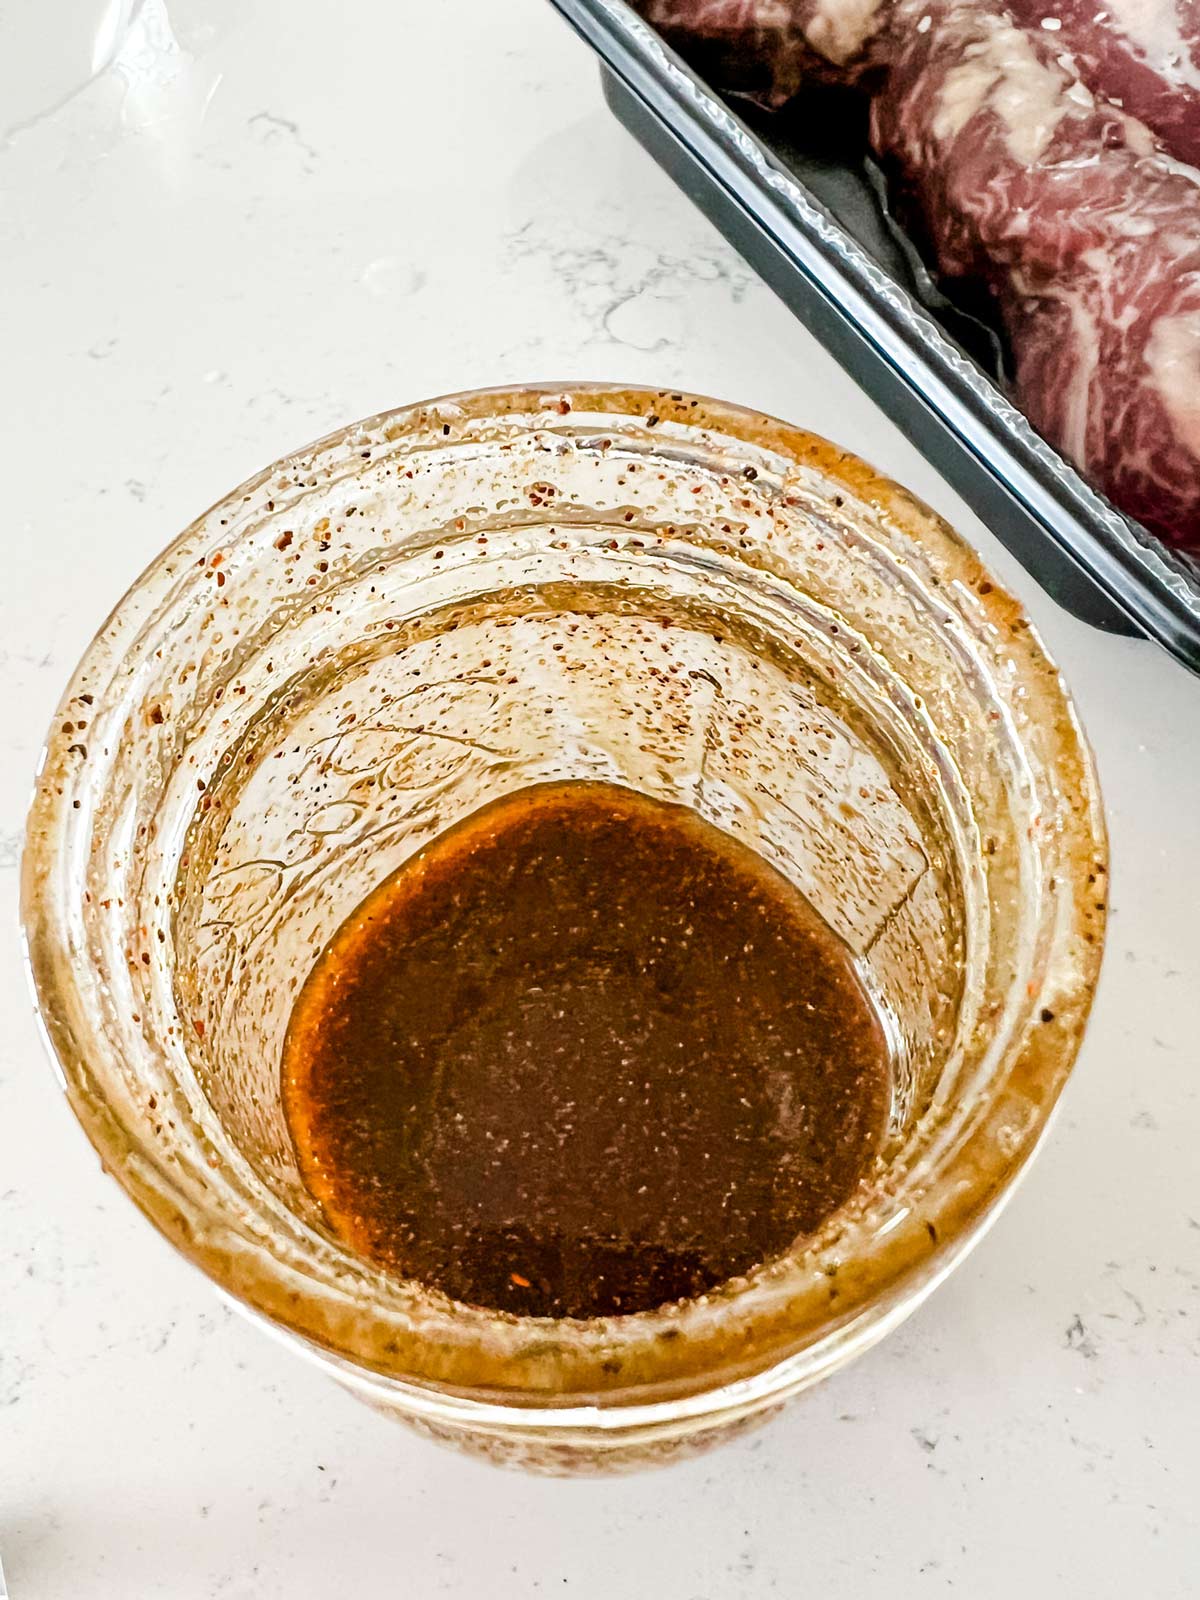 Steak taco marinade in a glass jar.